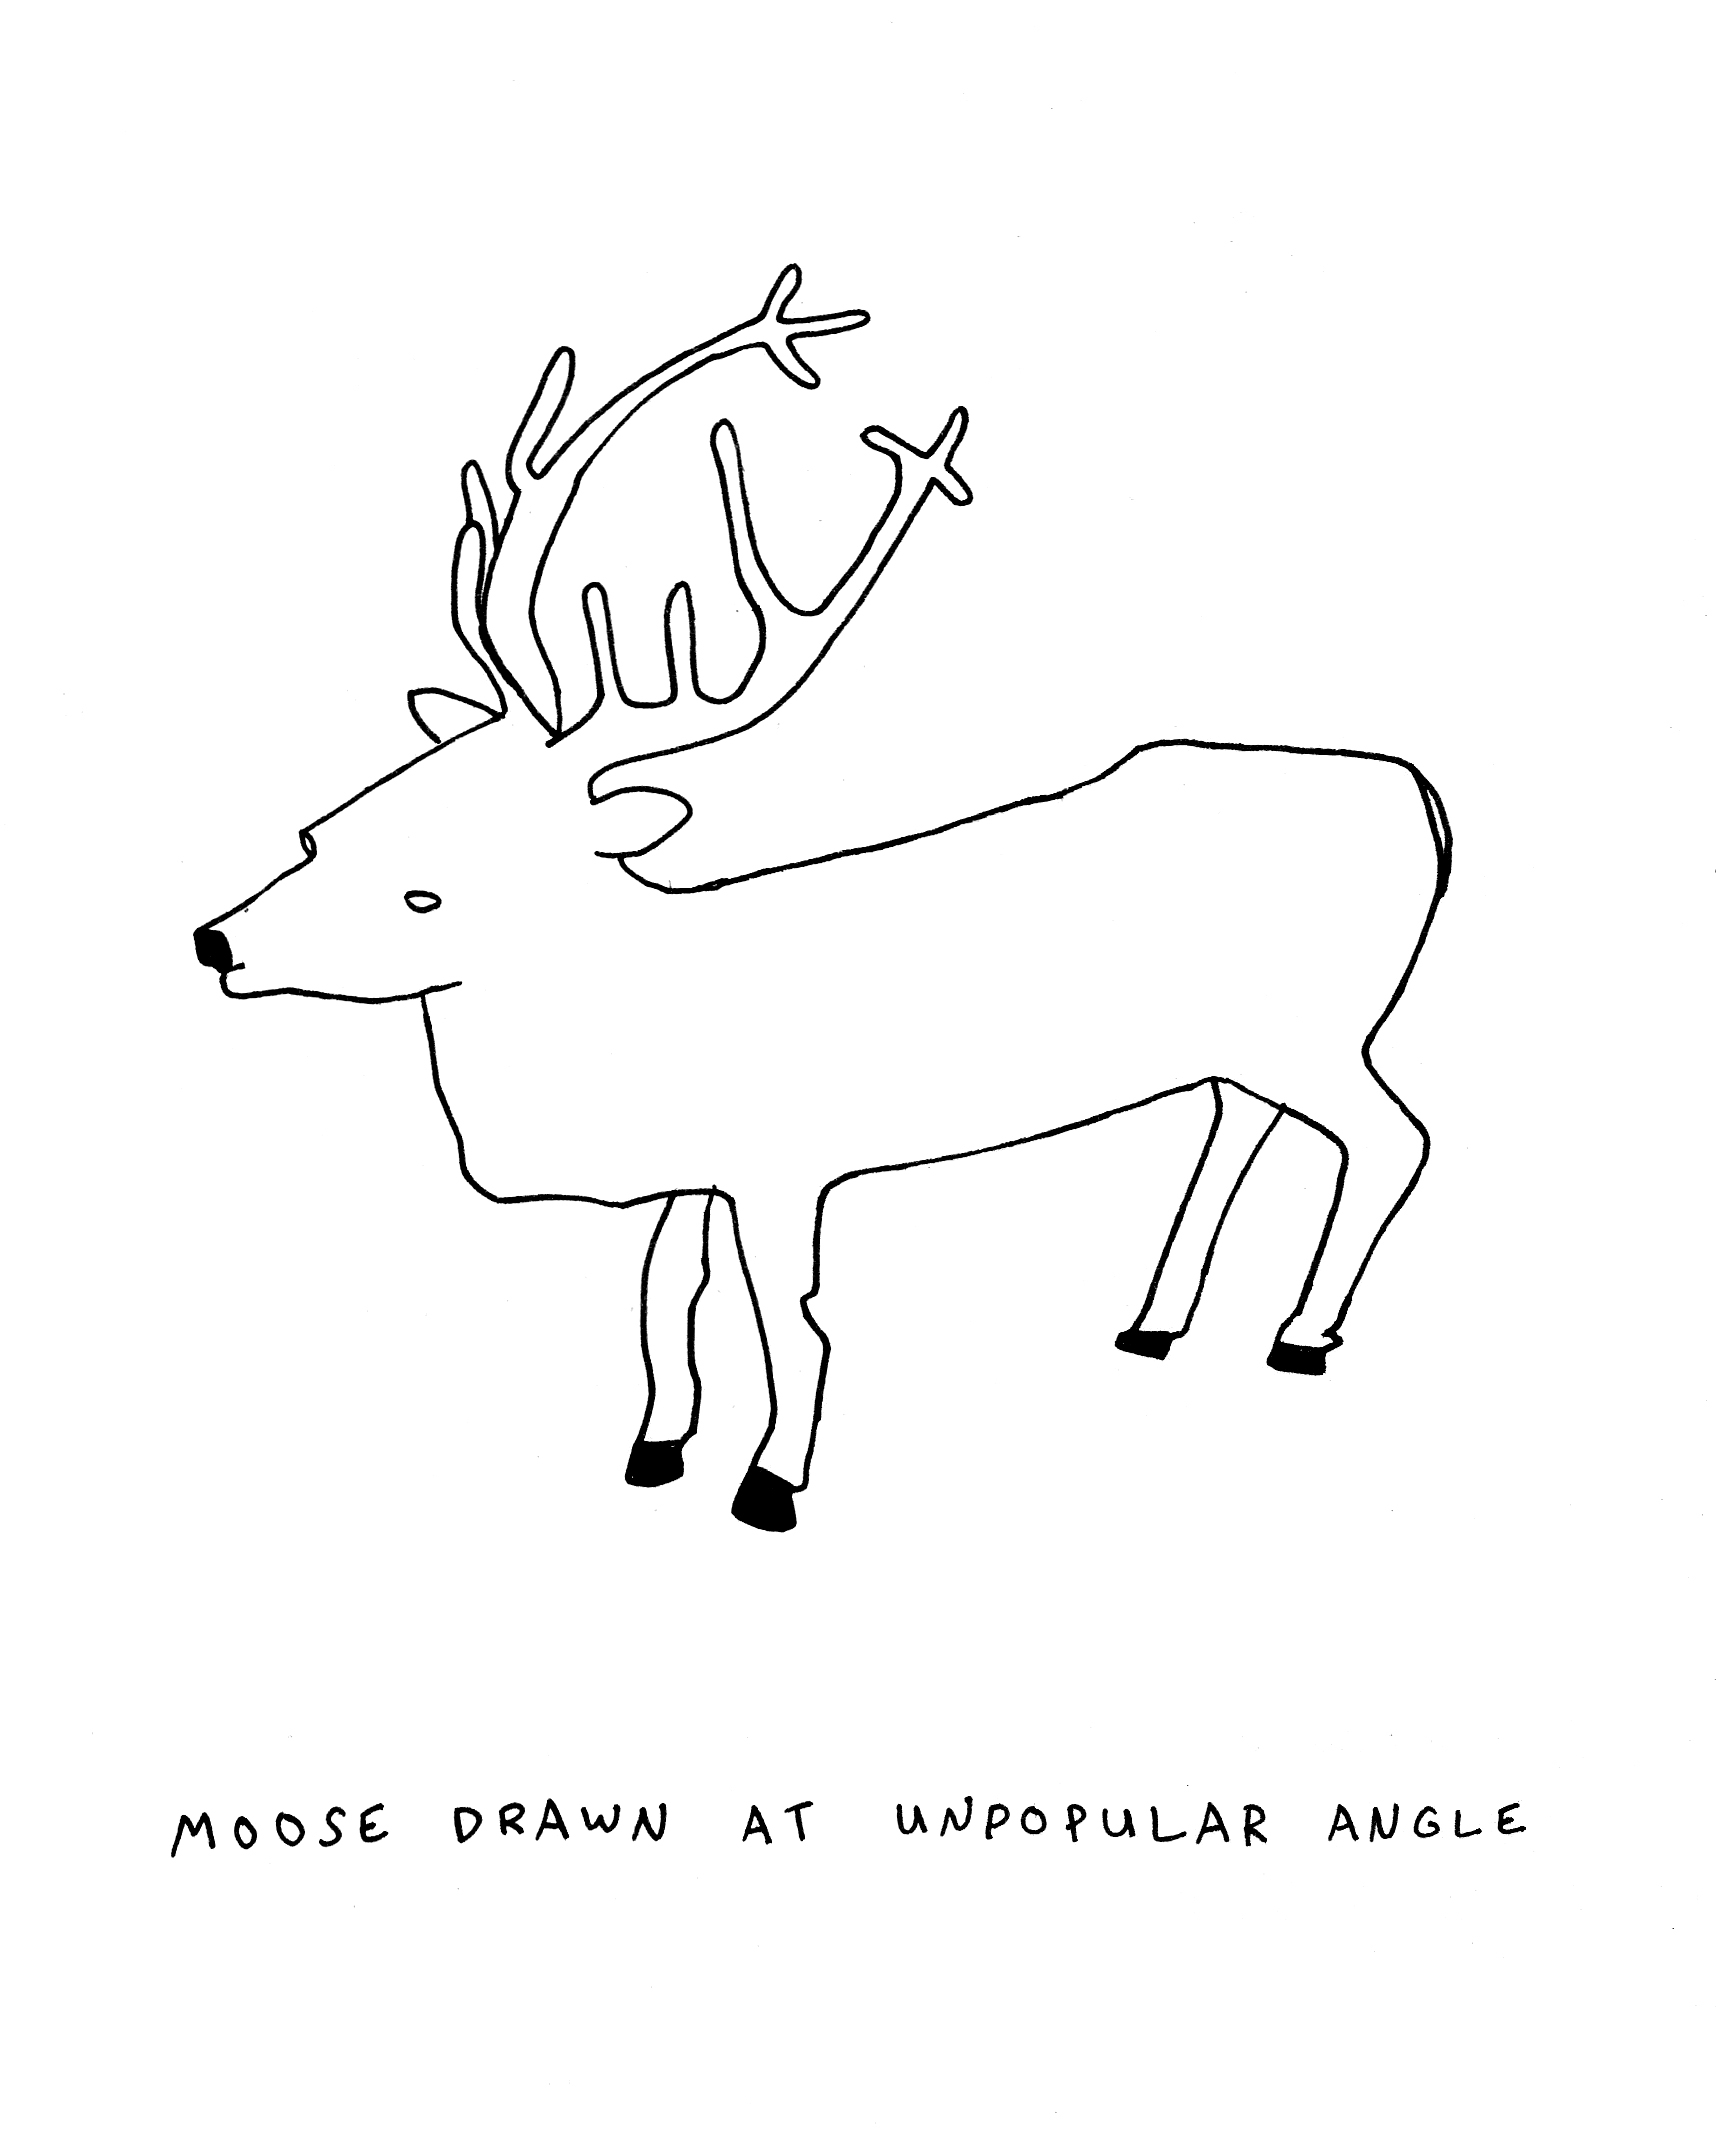 "Moose Drawn at Unpopular Angle"